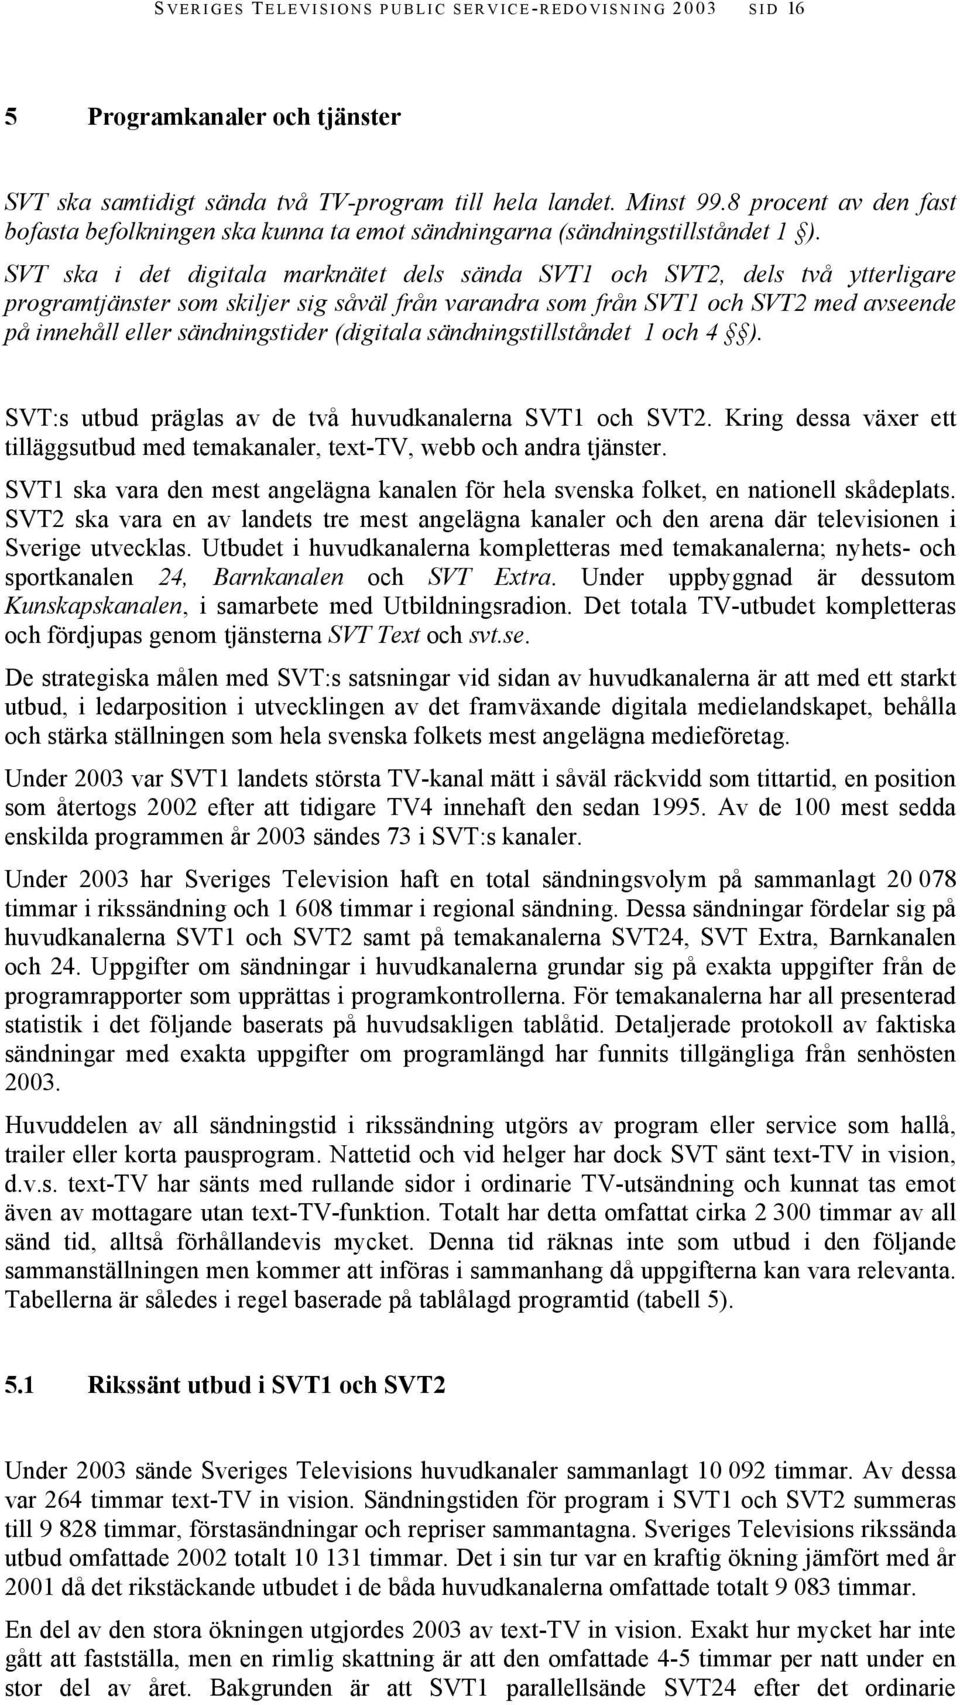 SVT ska i det digitala marknätet dels sända SVT1 och SVT2, dels två ytterligare programtjänster som skiljer sig såväl från varandra som från SVT1 och SVT2 med avseende på innehåll eller